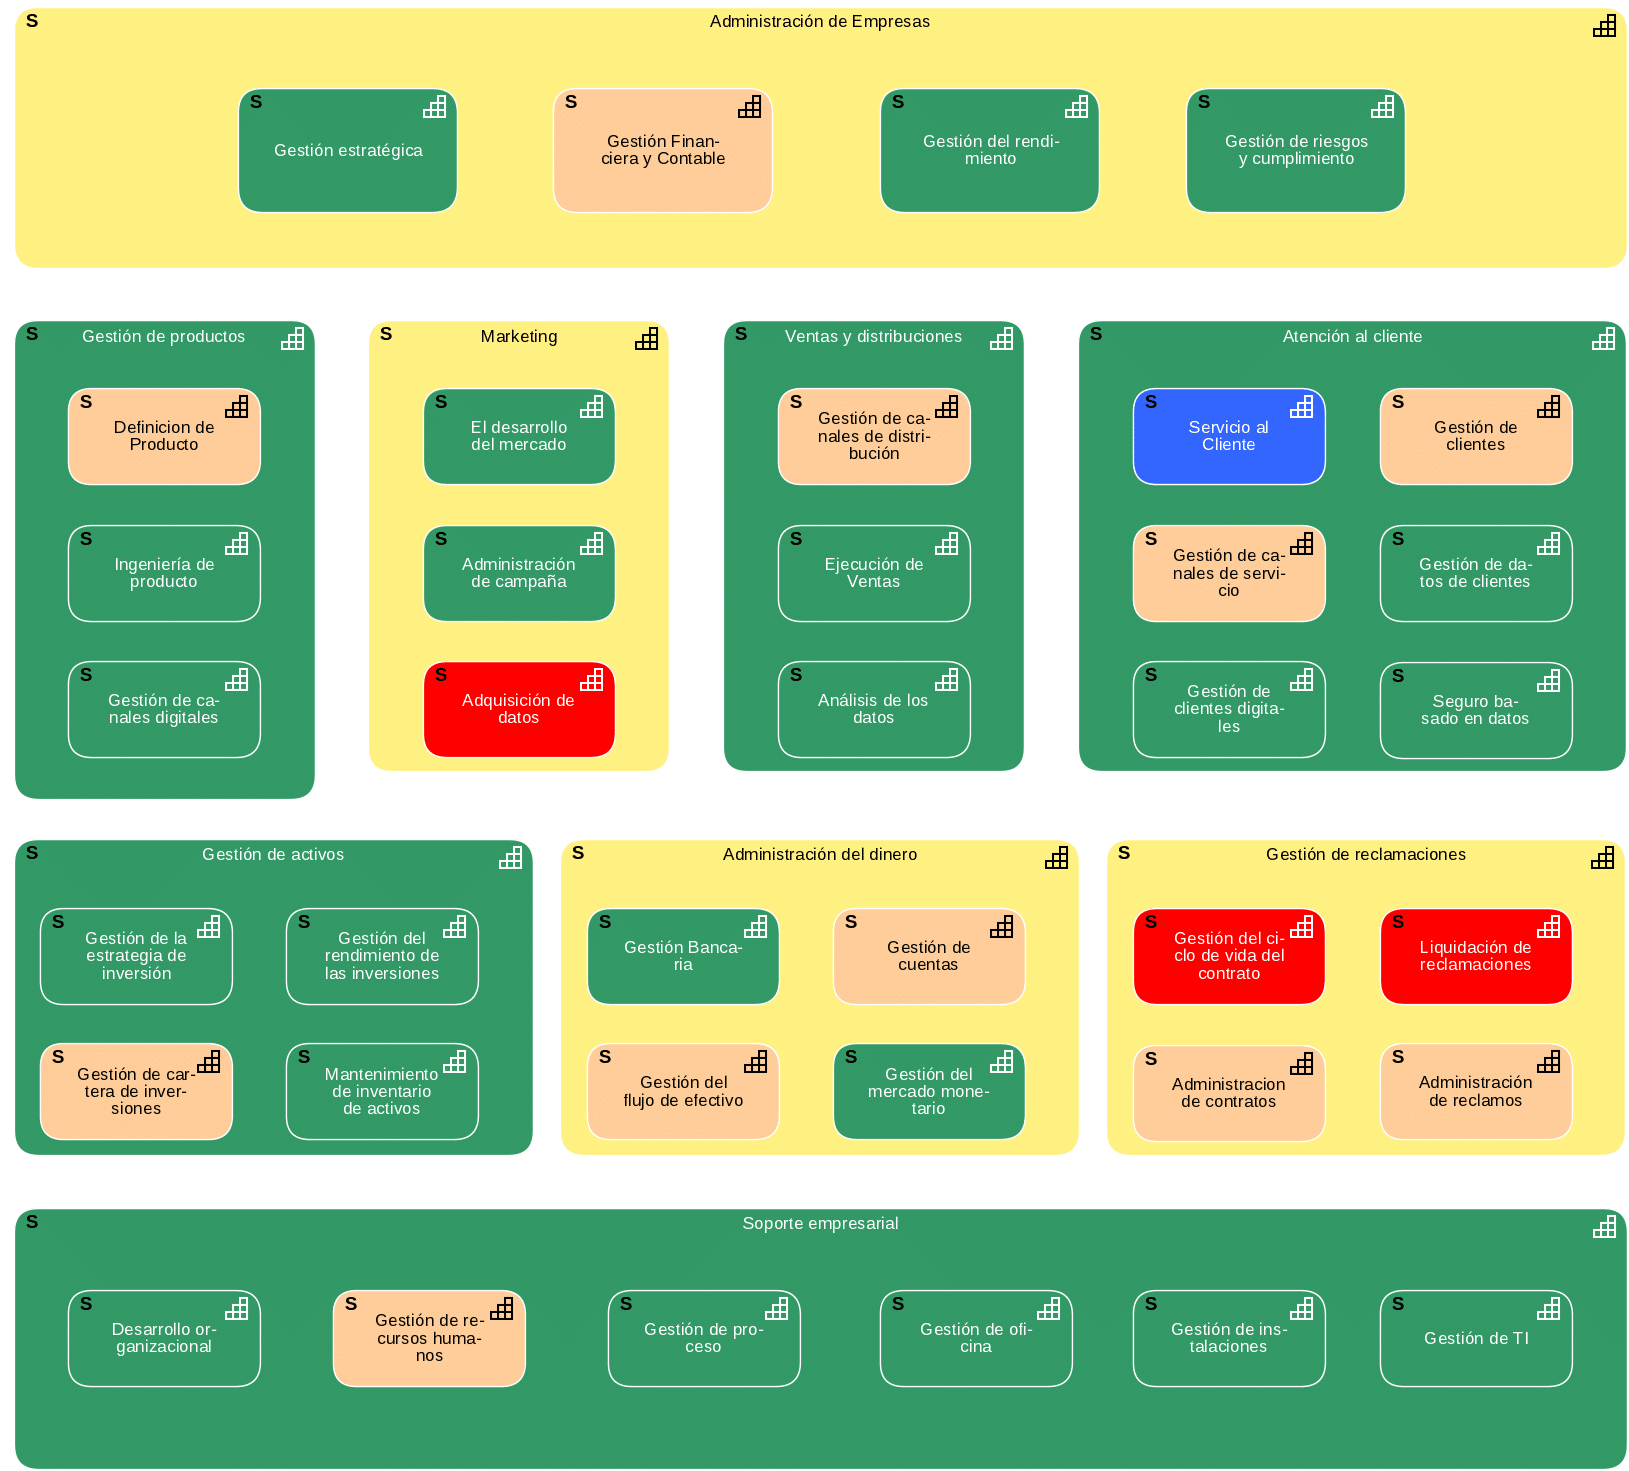 mapa de capacidades creado en ADOIT